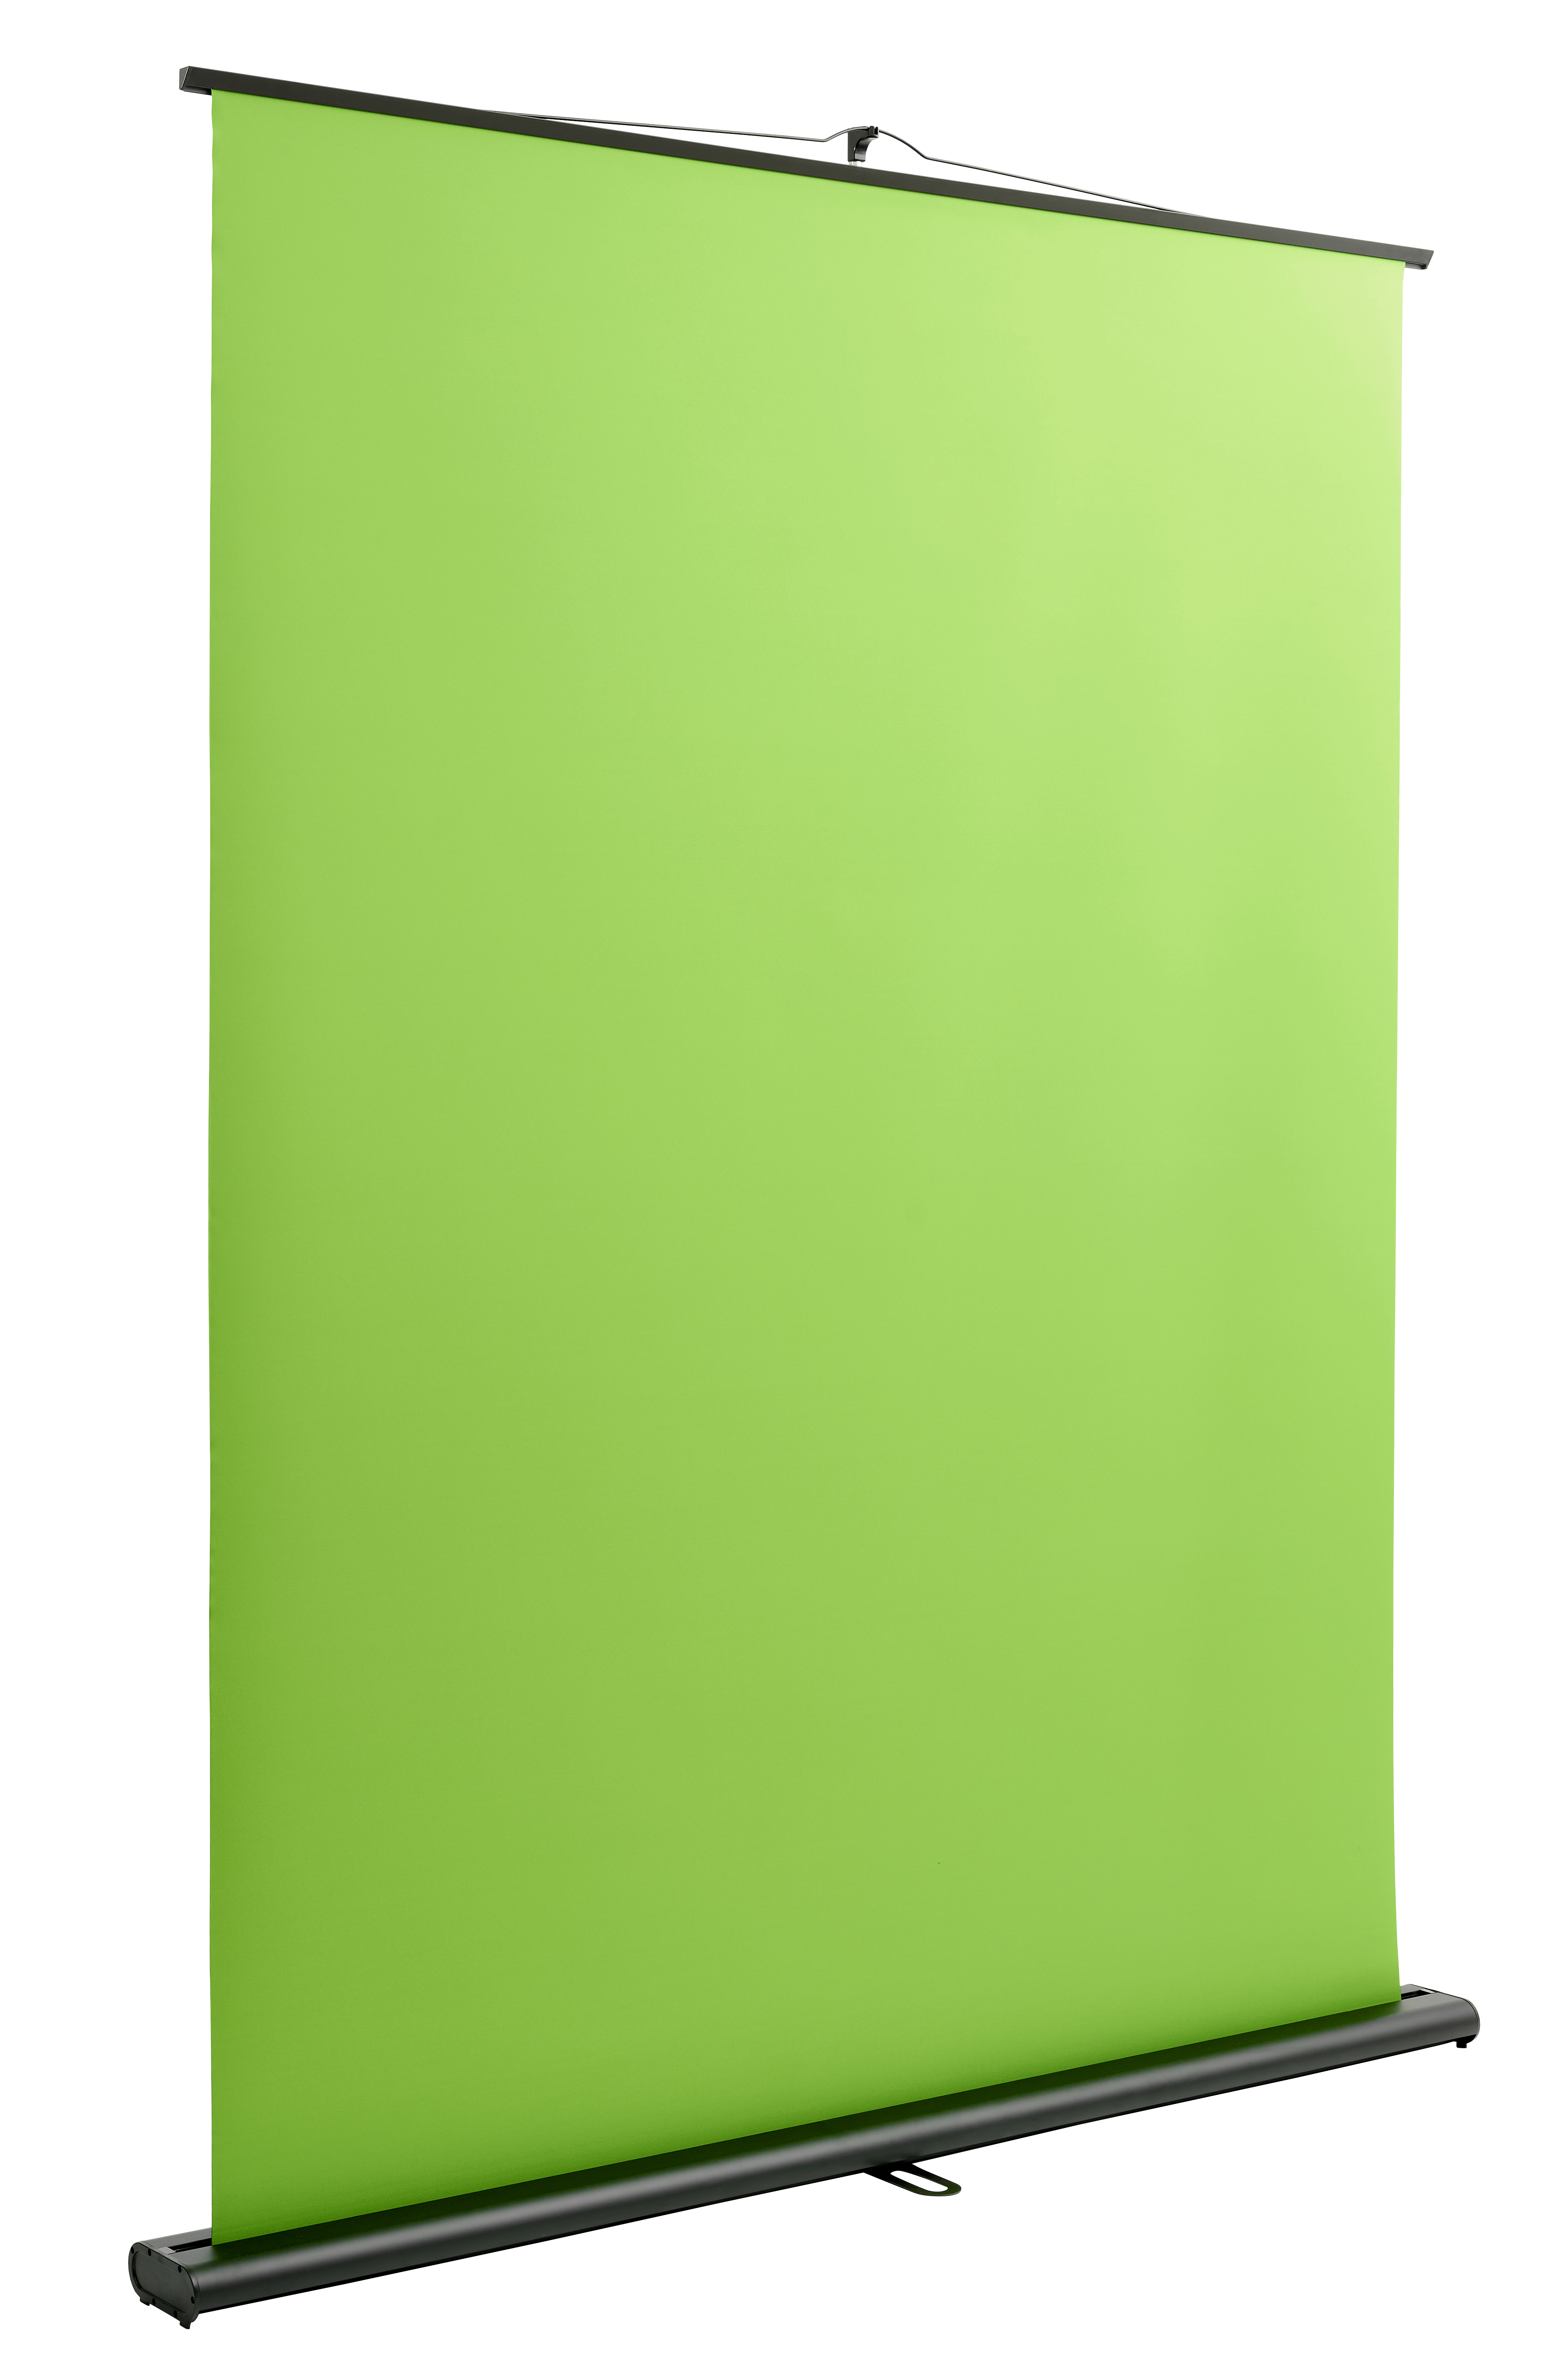 Premium-Gewebe Green Screen 150 x 170-270 cm Chromakey-Hintergrund,Roll-Up 